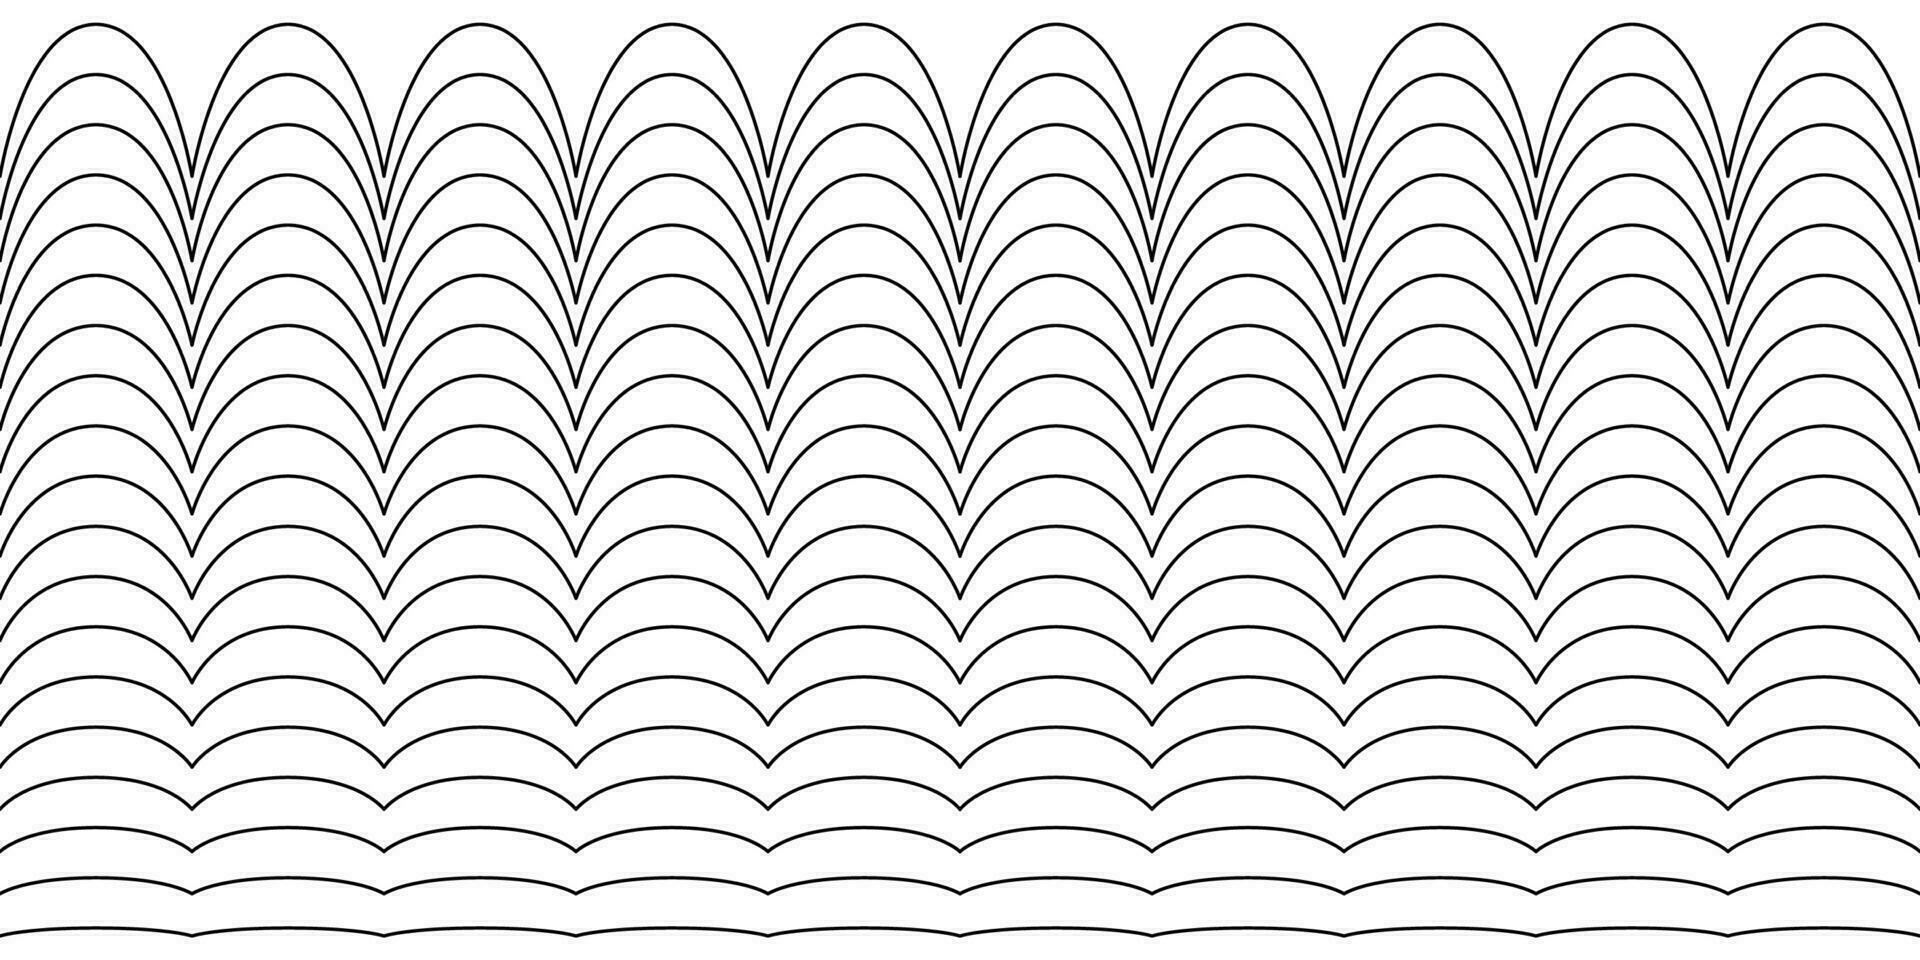 uma conjunto do ondulado ziguezague horizontal perverso linhas vetor